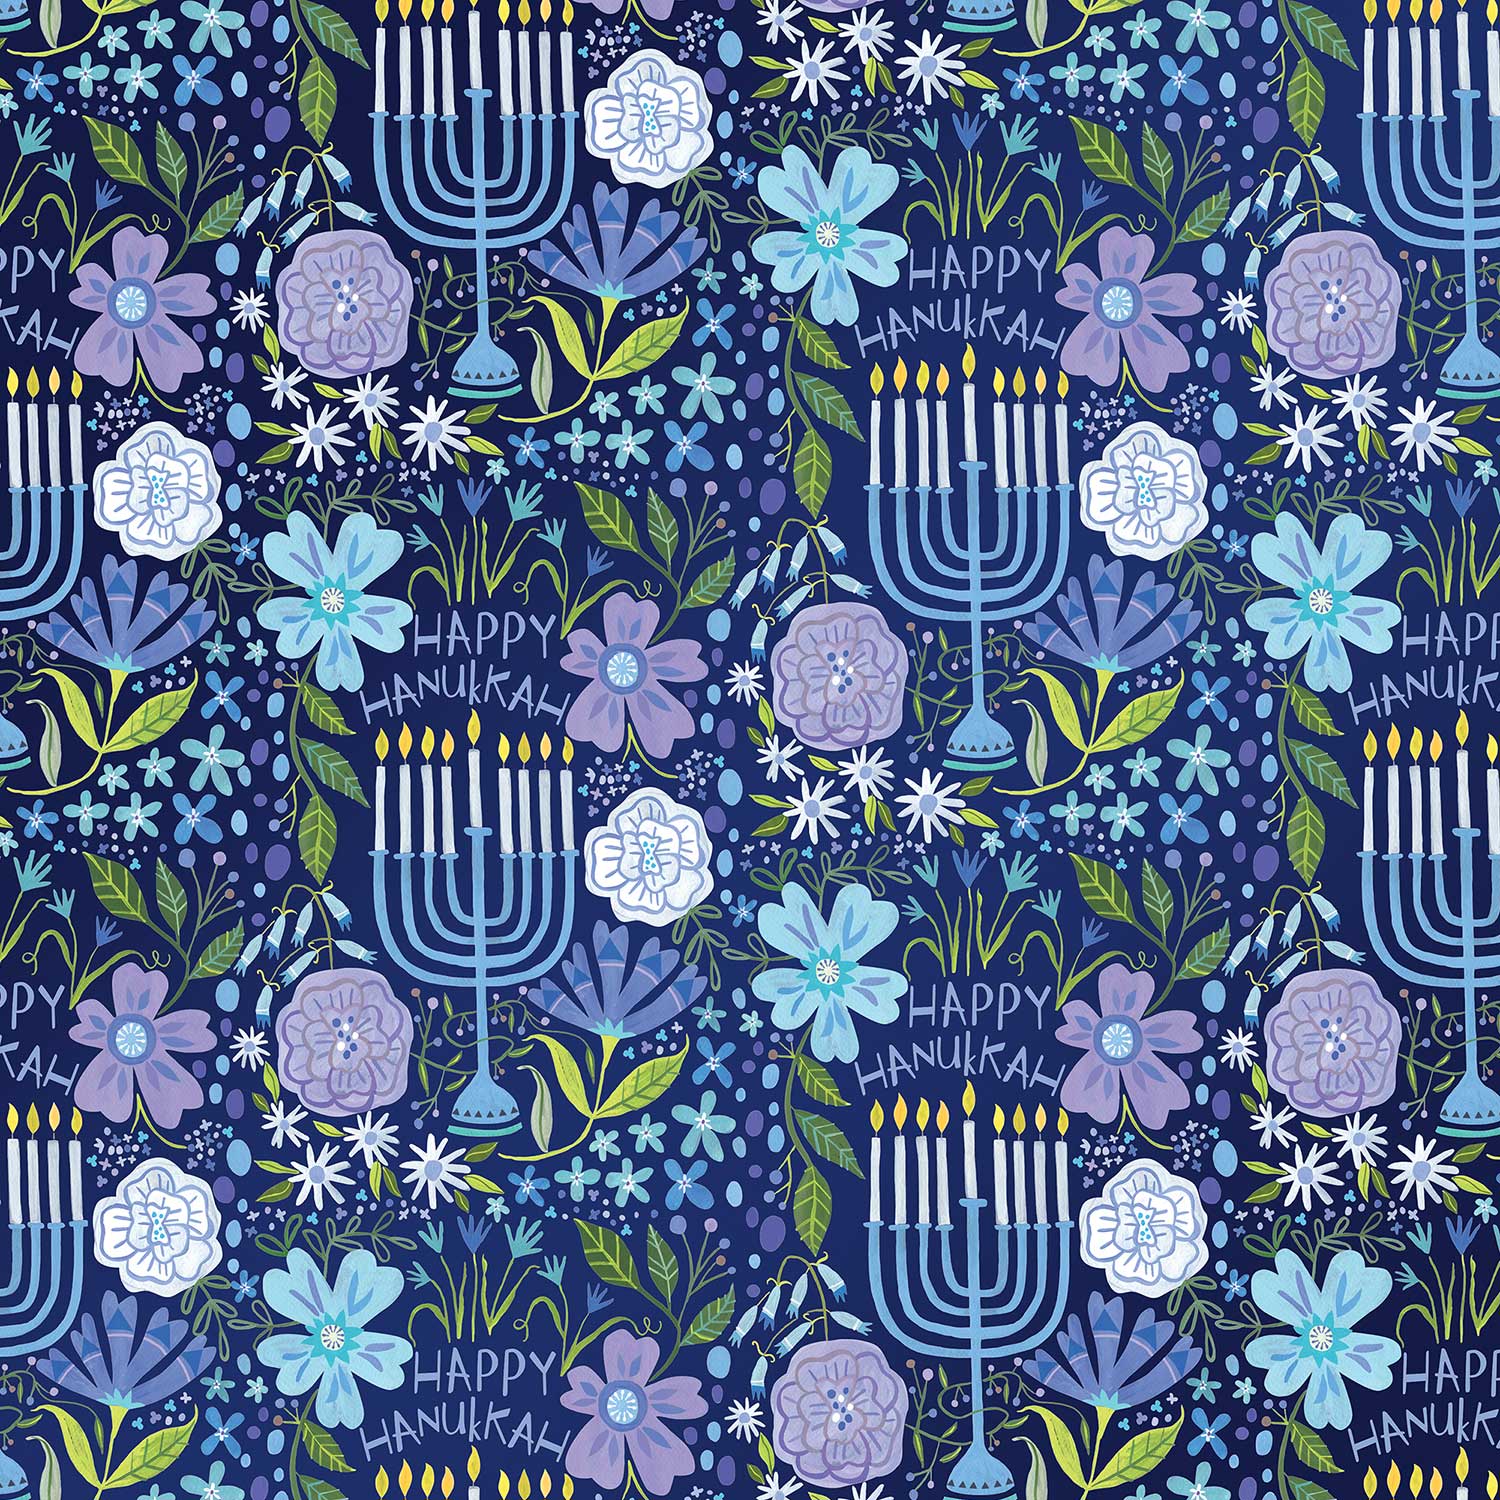 Floral Menorah Hanukkah Gift Wrap 1/4 Ream 208 ft x 24 in